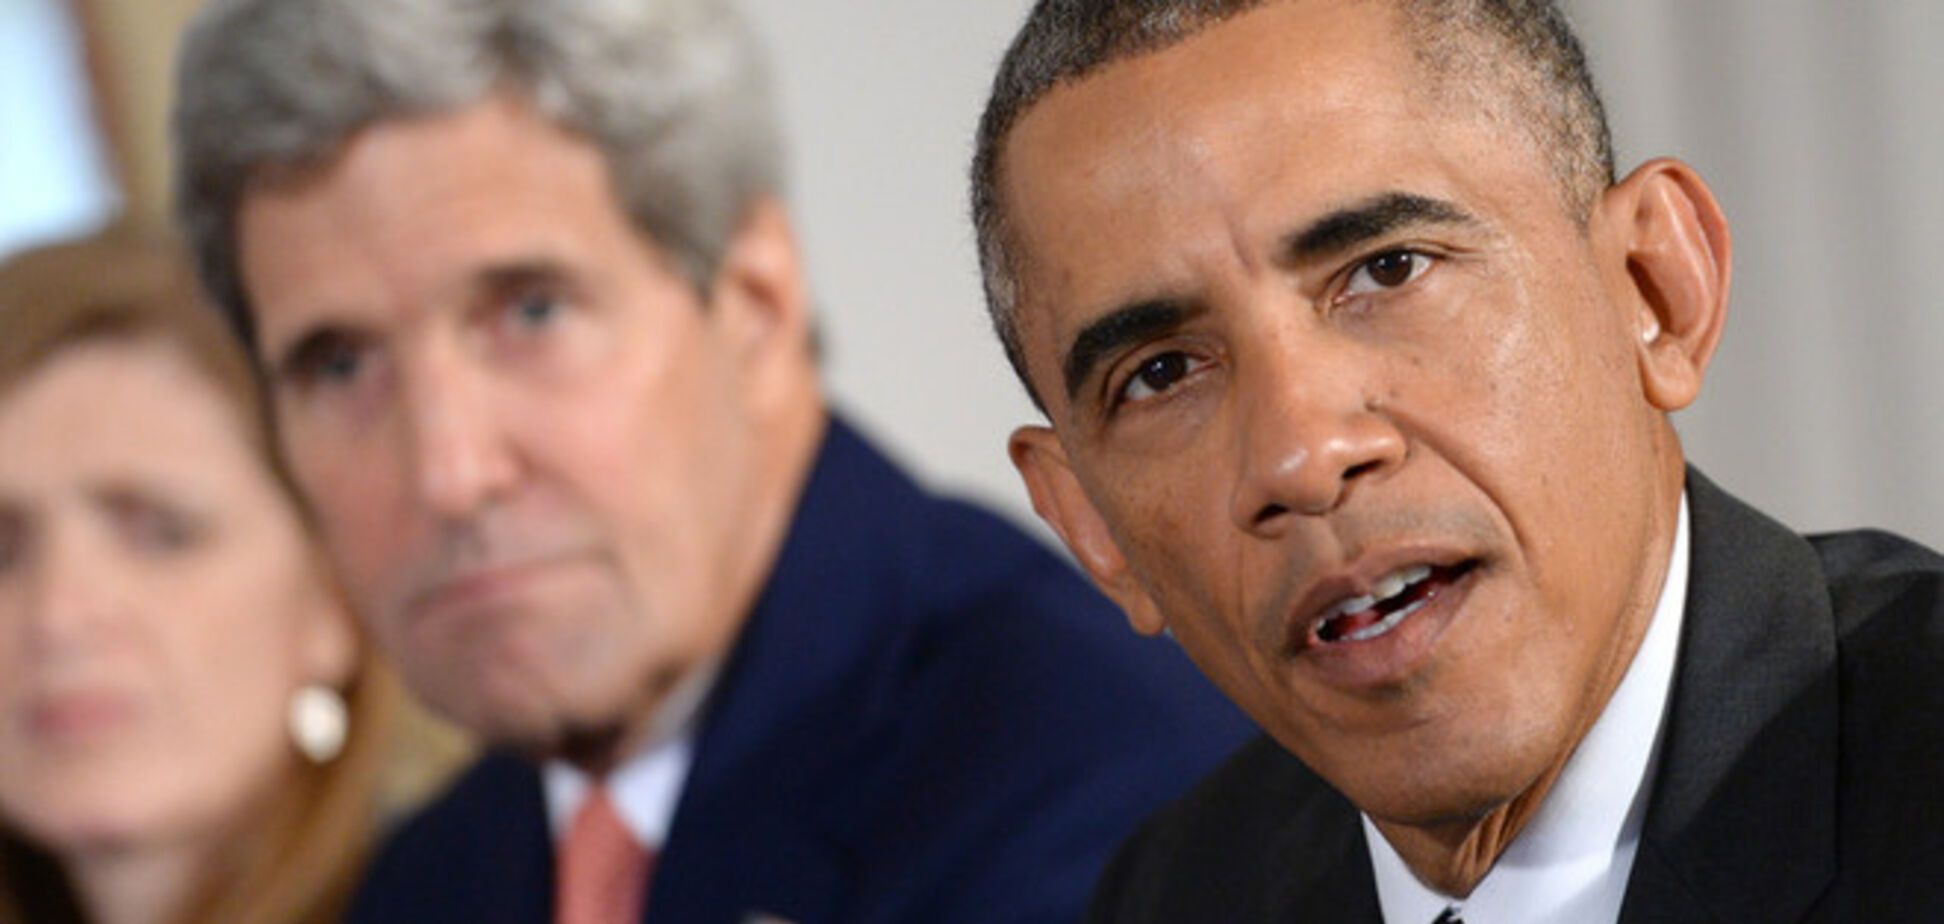 Обама в ближайшие дни примет решение о поставках оружия Украине - Керри